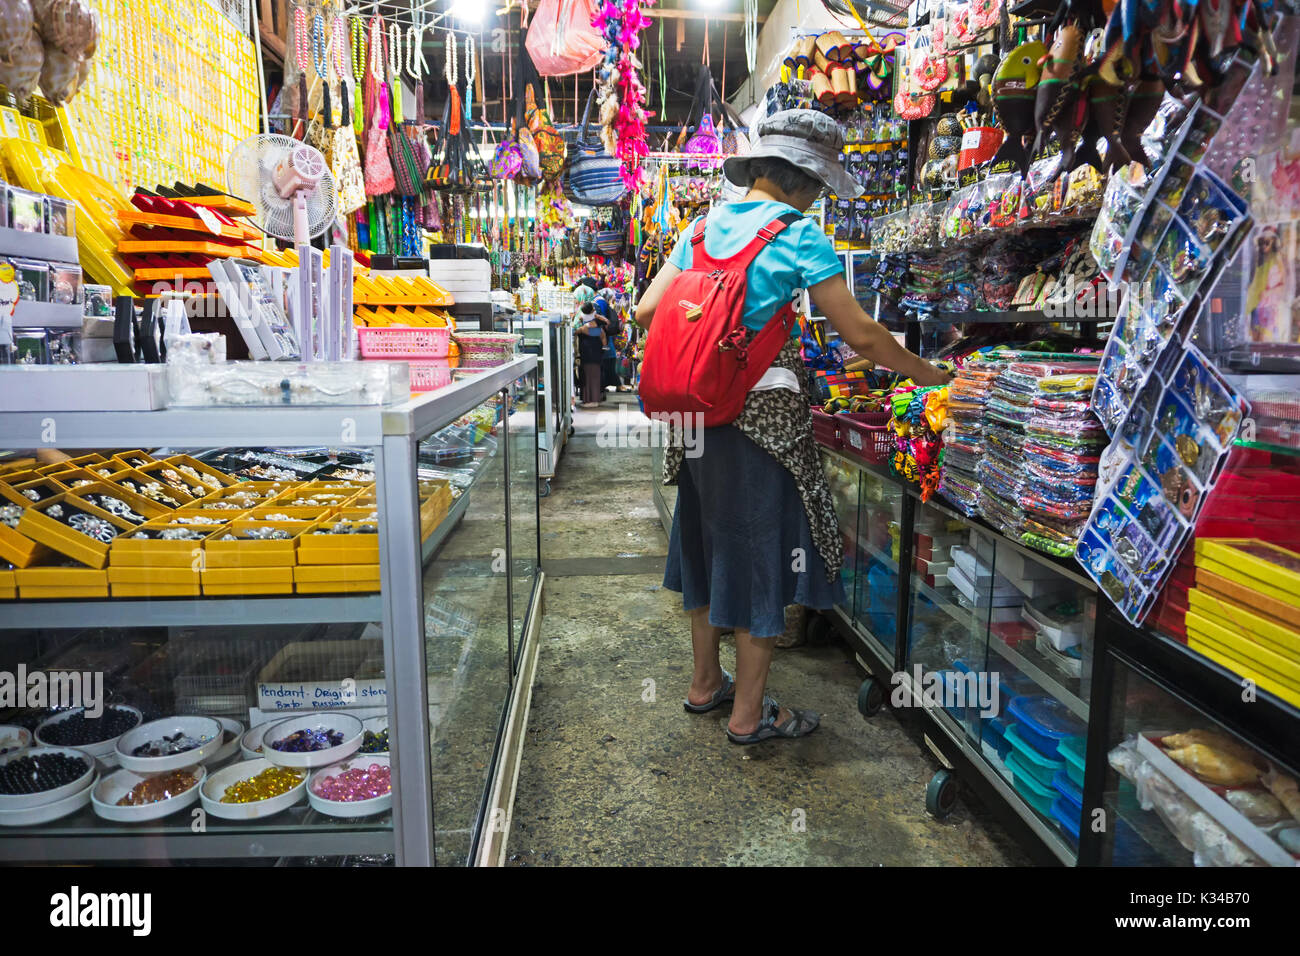 Femme non identifiée shopping pour souvenir à Filipino marché de souvenirs à Kota Kinabalu, Sabah, Borneo Kota Kinabalu, Malaisie. Banque D'Images